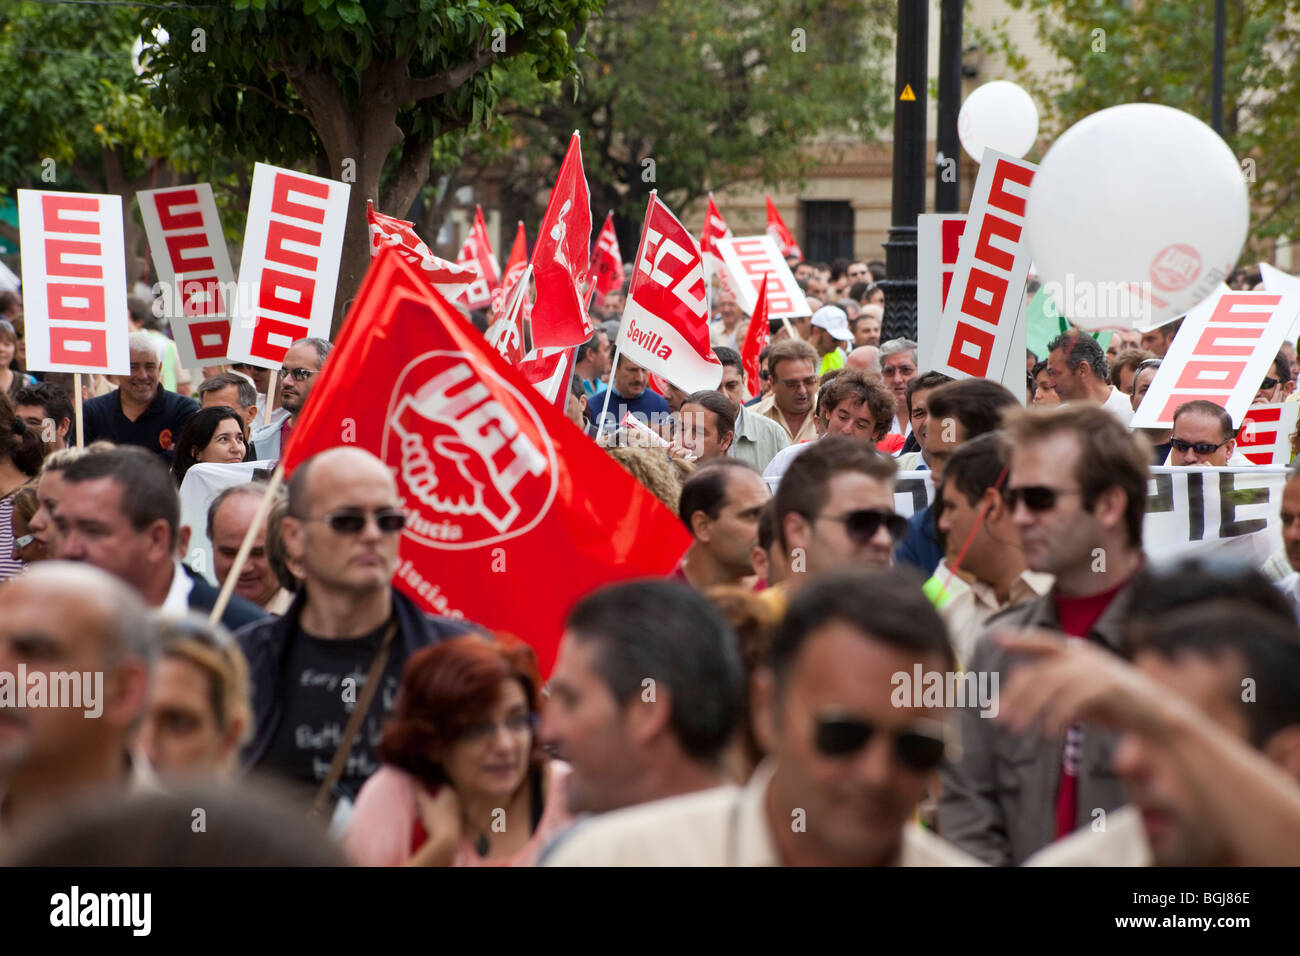 Gewerkschaften März in Sevilla, Spanien, Protest gegen Arbeitslosigkeit und bittet um Unterstützung für öffentliche Arbeitsplätze und weniger Familienunternehmen Stockfoto